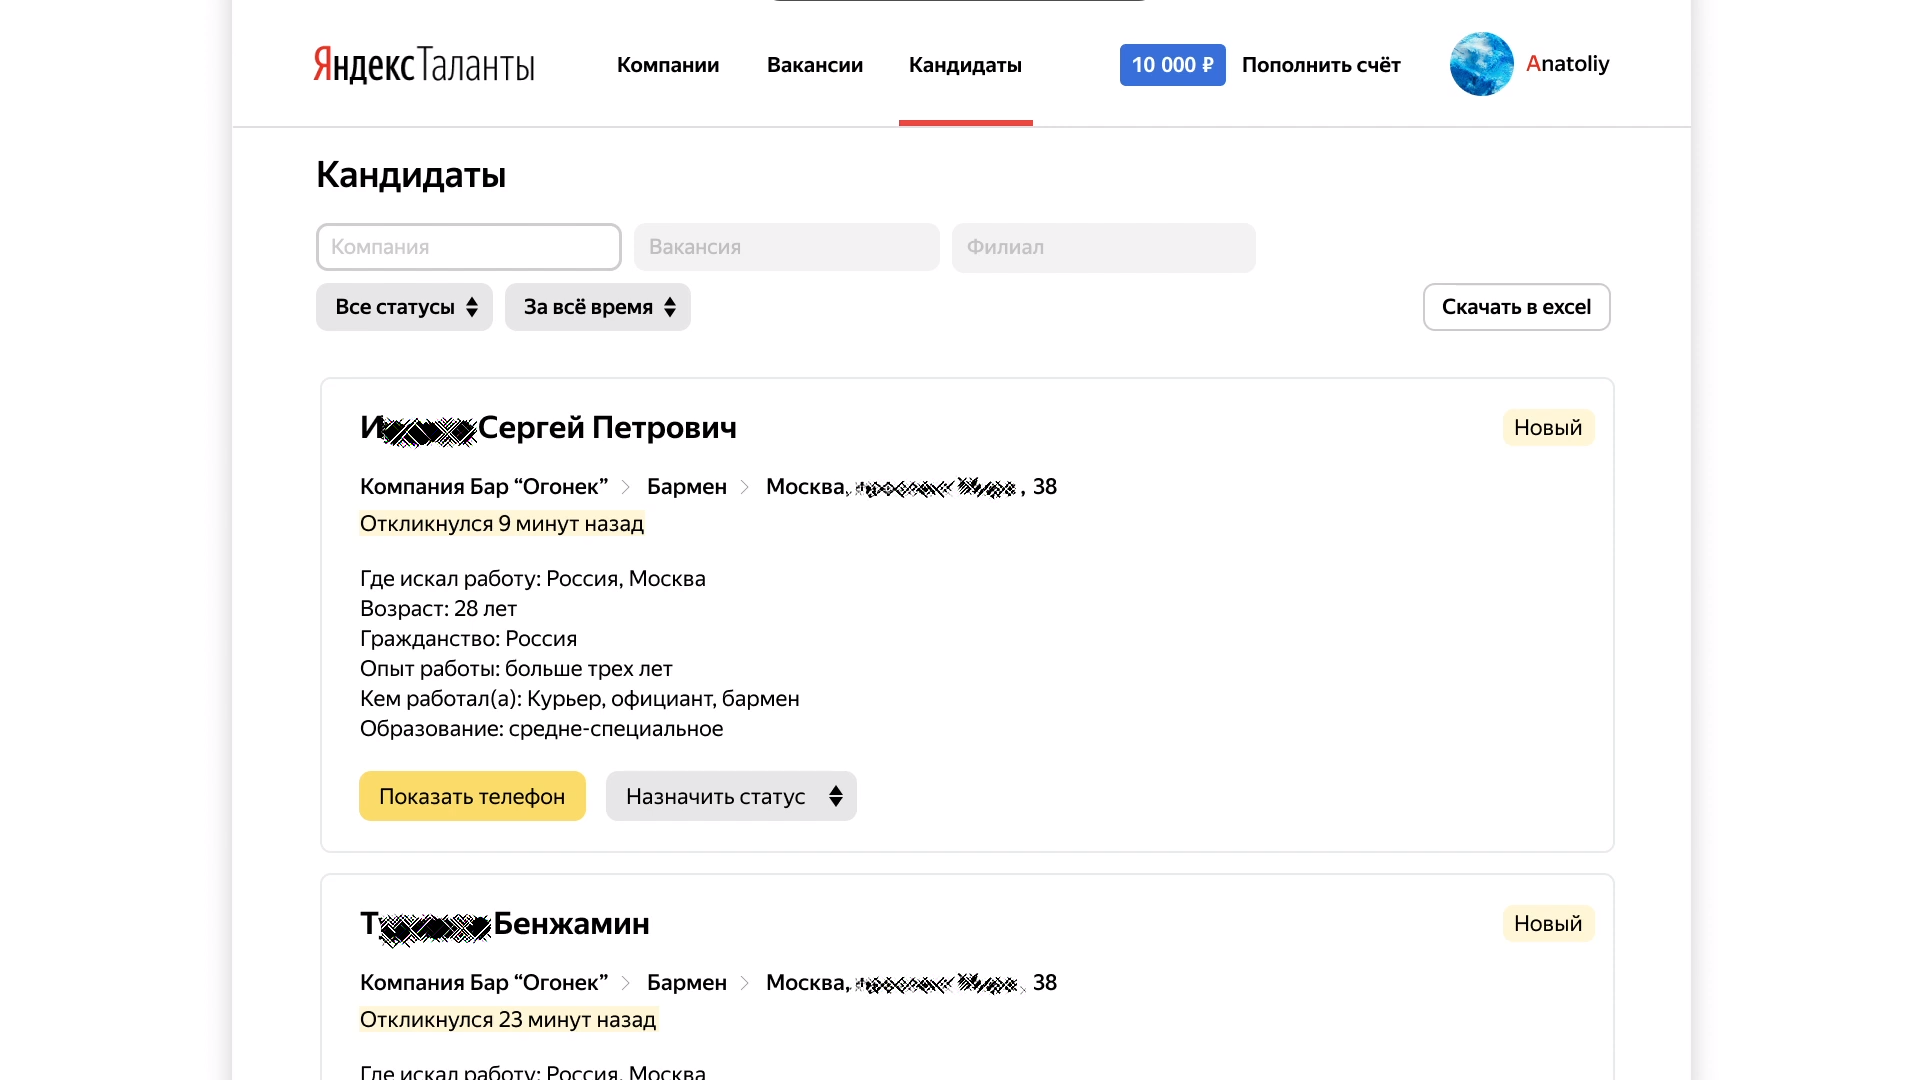 Список откликнувшихся кандидатов в программе Яндекс.Таланты